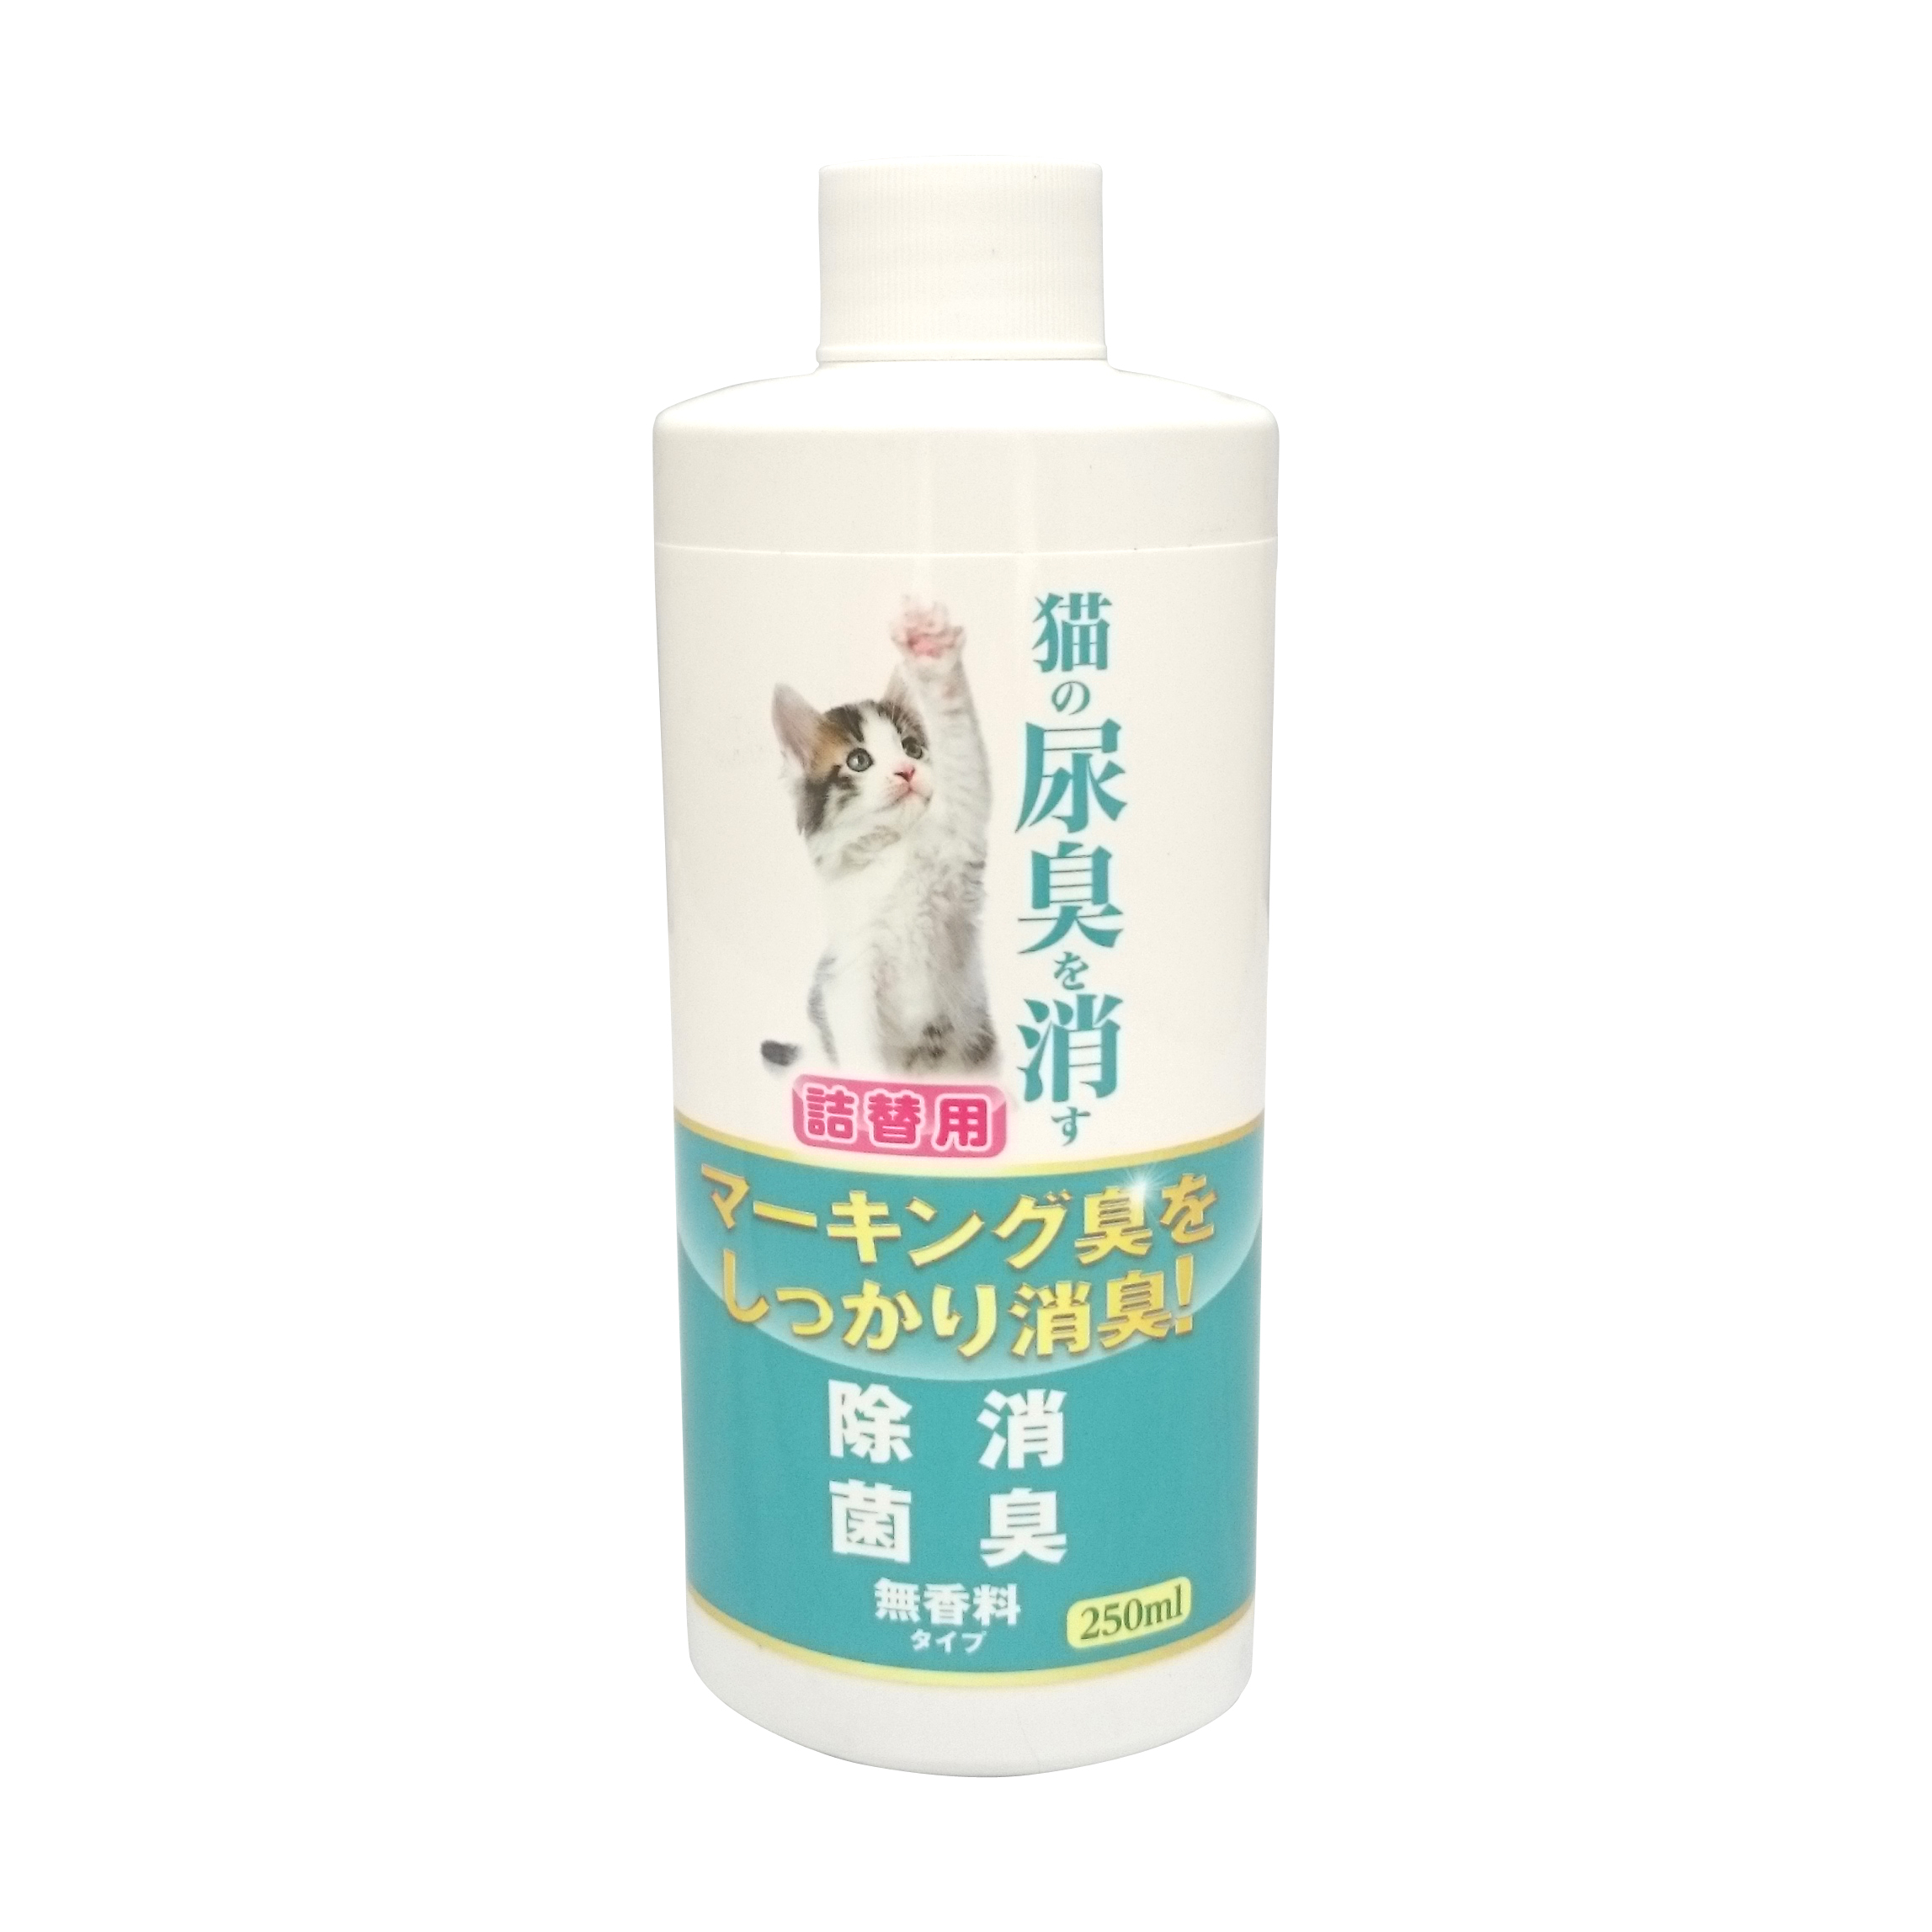 ニチドウ 猫の尿臭を消す消臭剤 詰替用 無香料タイプ 250ml